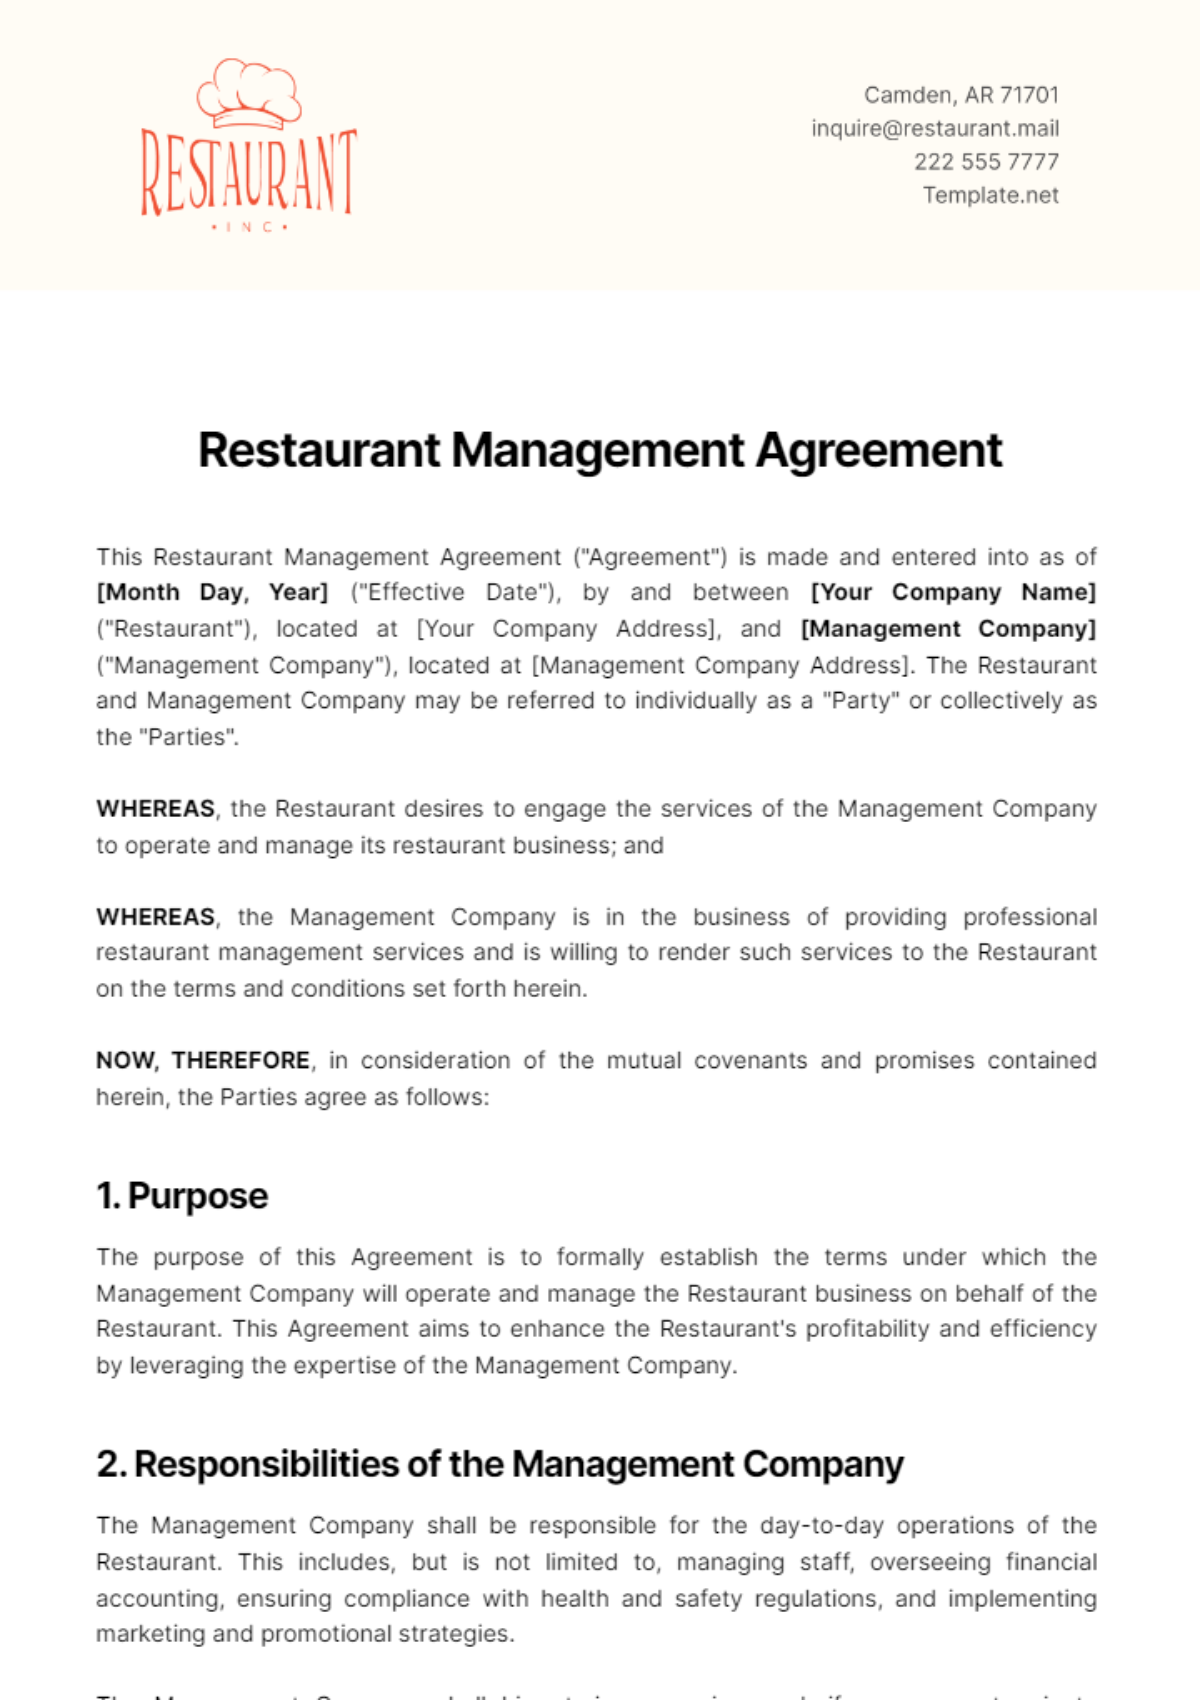 Restaurant Management Agreement Template